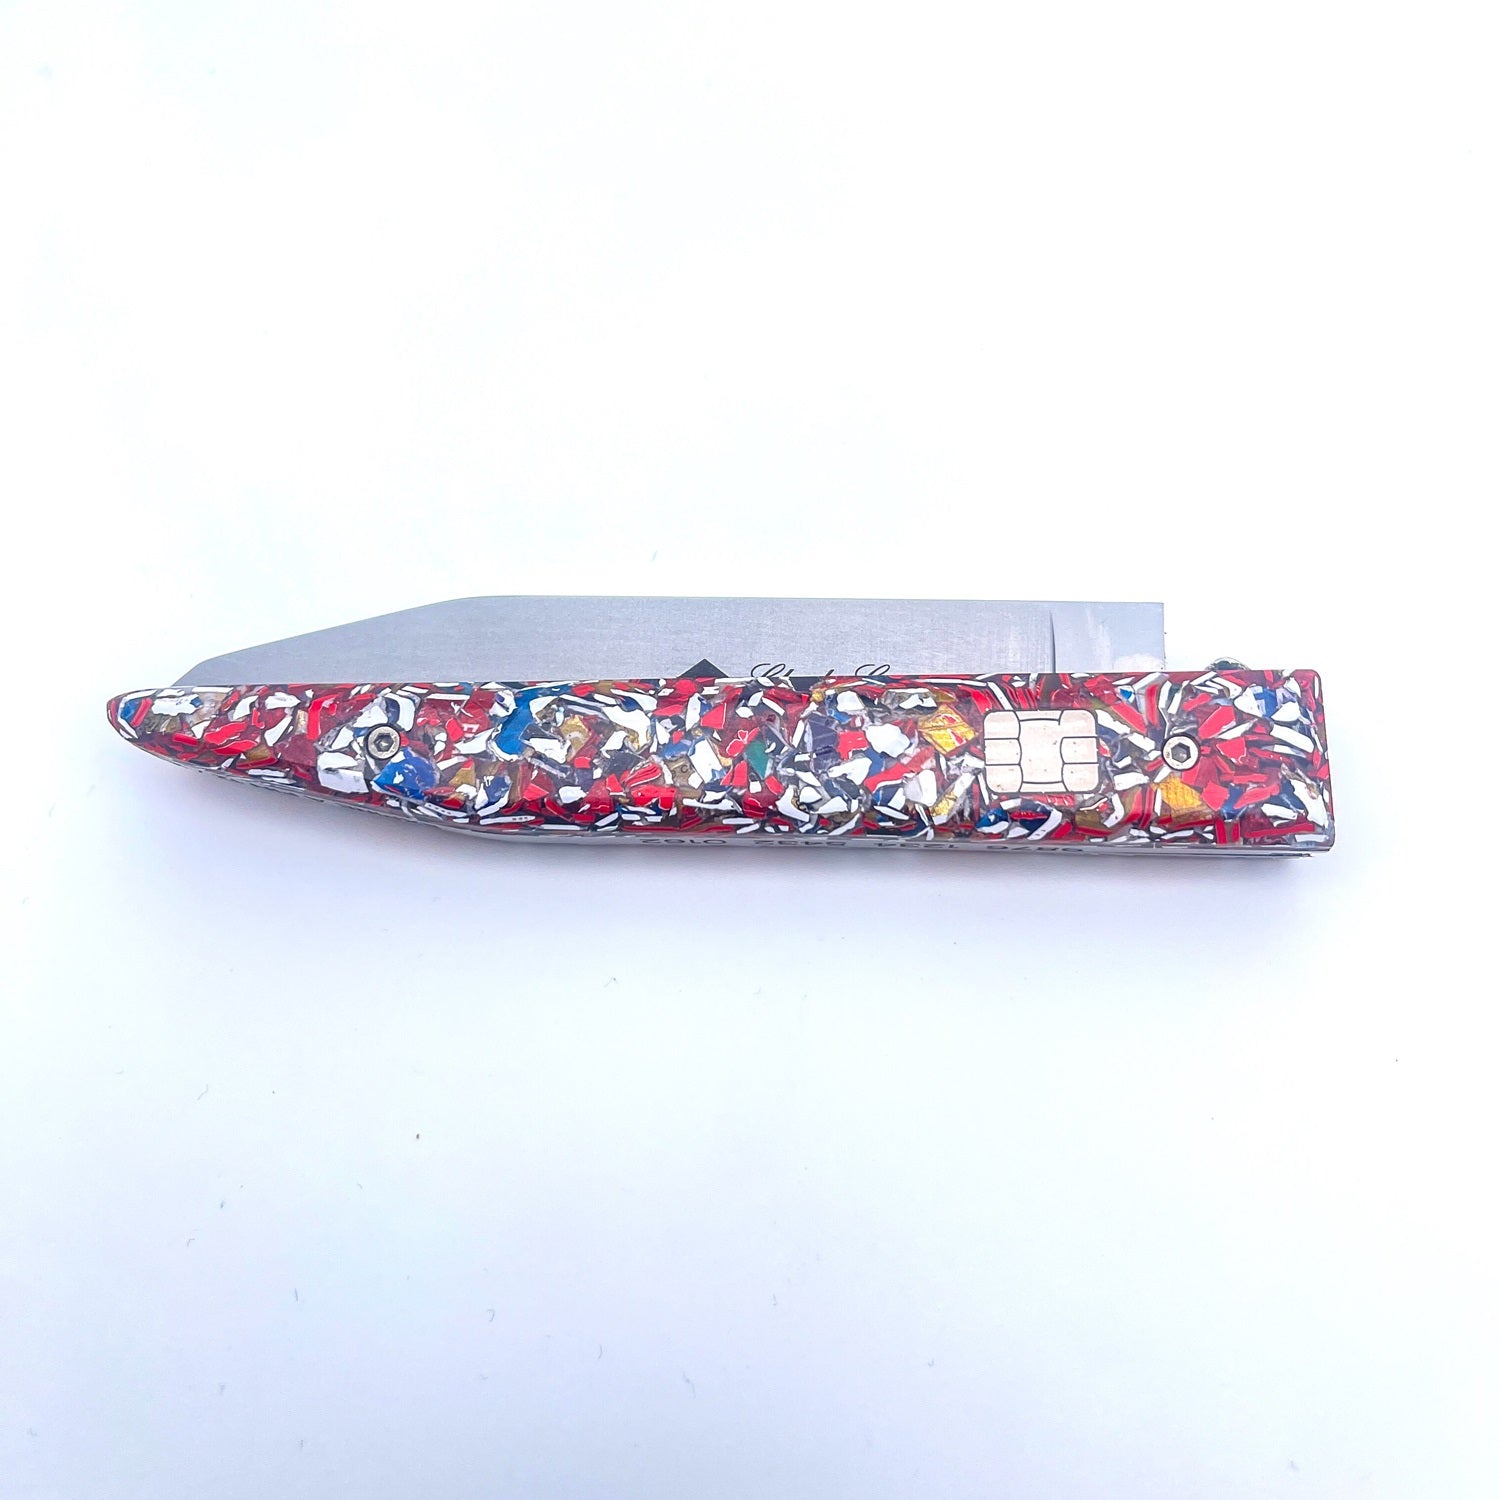 Bank card knife